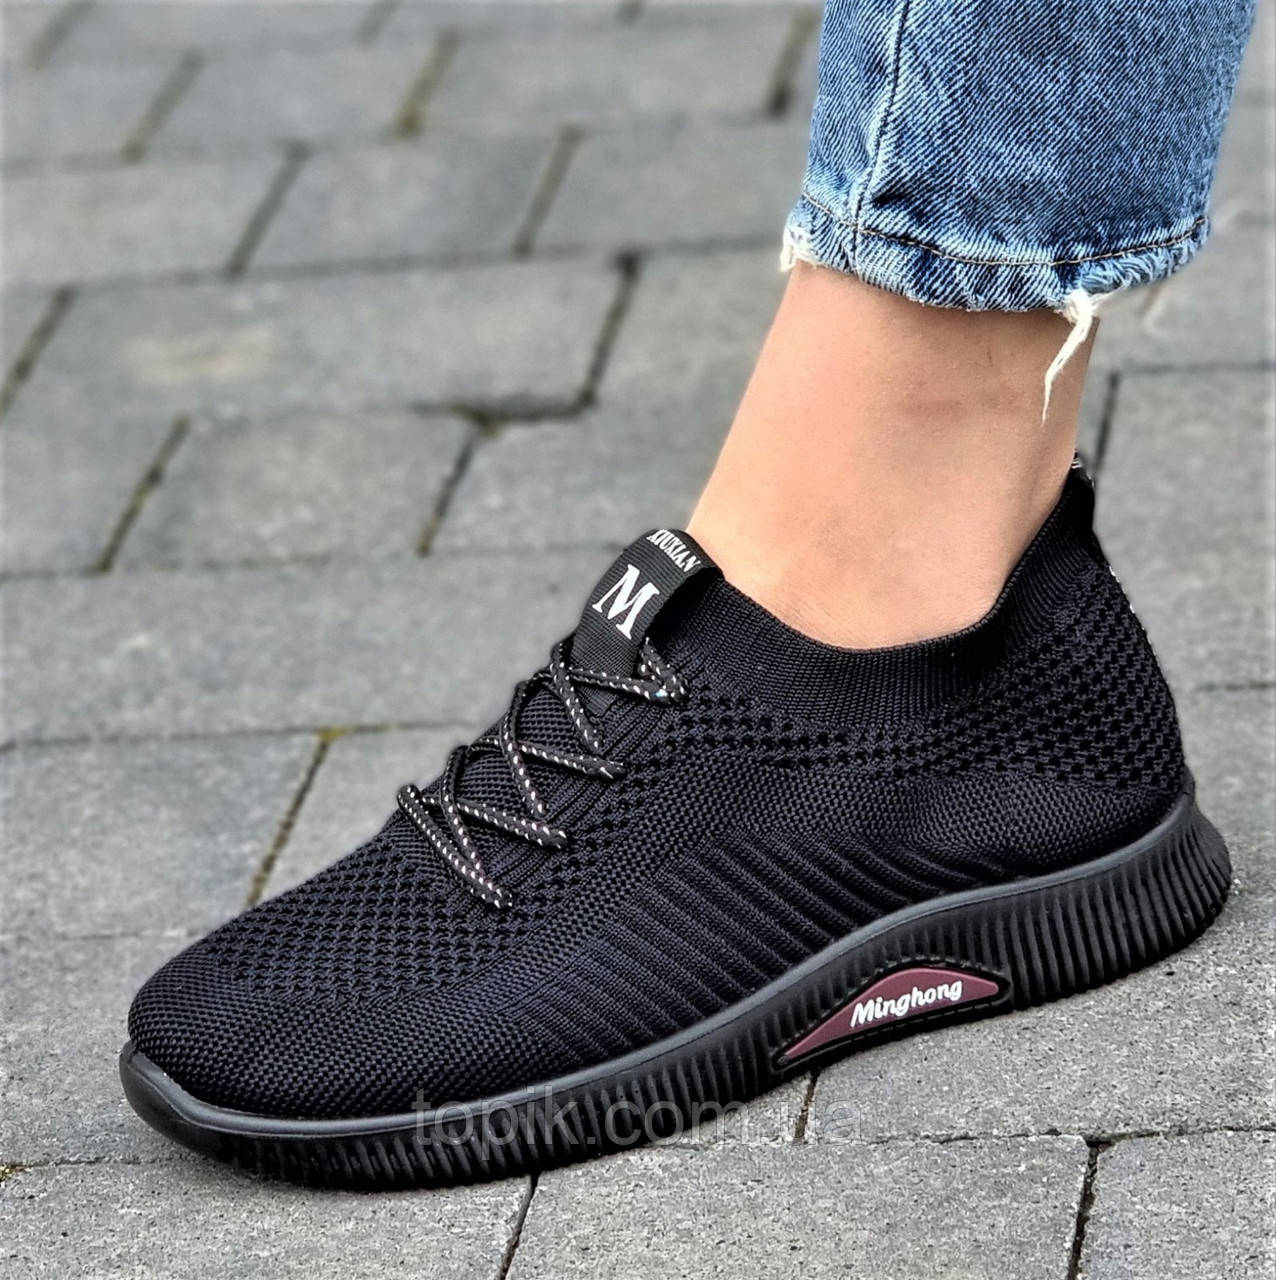 Кросівки мокасини жіночі чорні літні трикотажні легкі, підійдуть на широку ногу (Код: 3153)